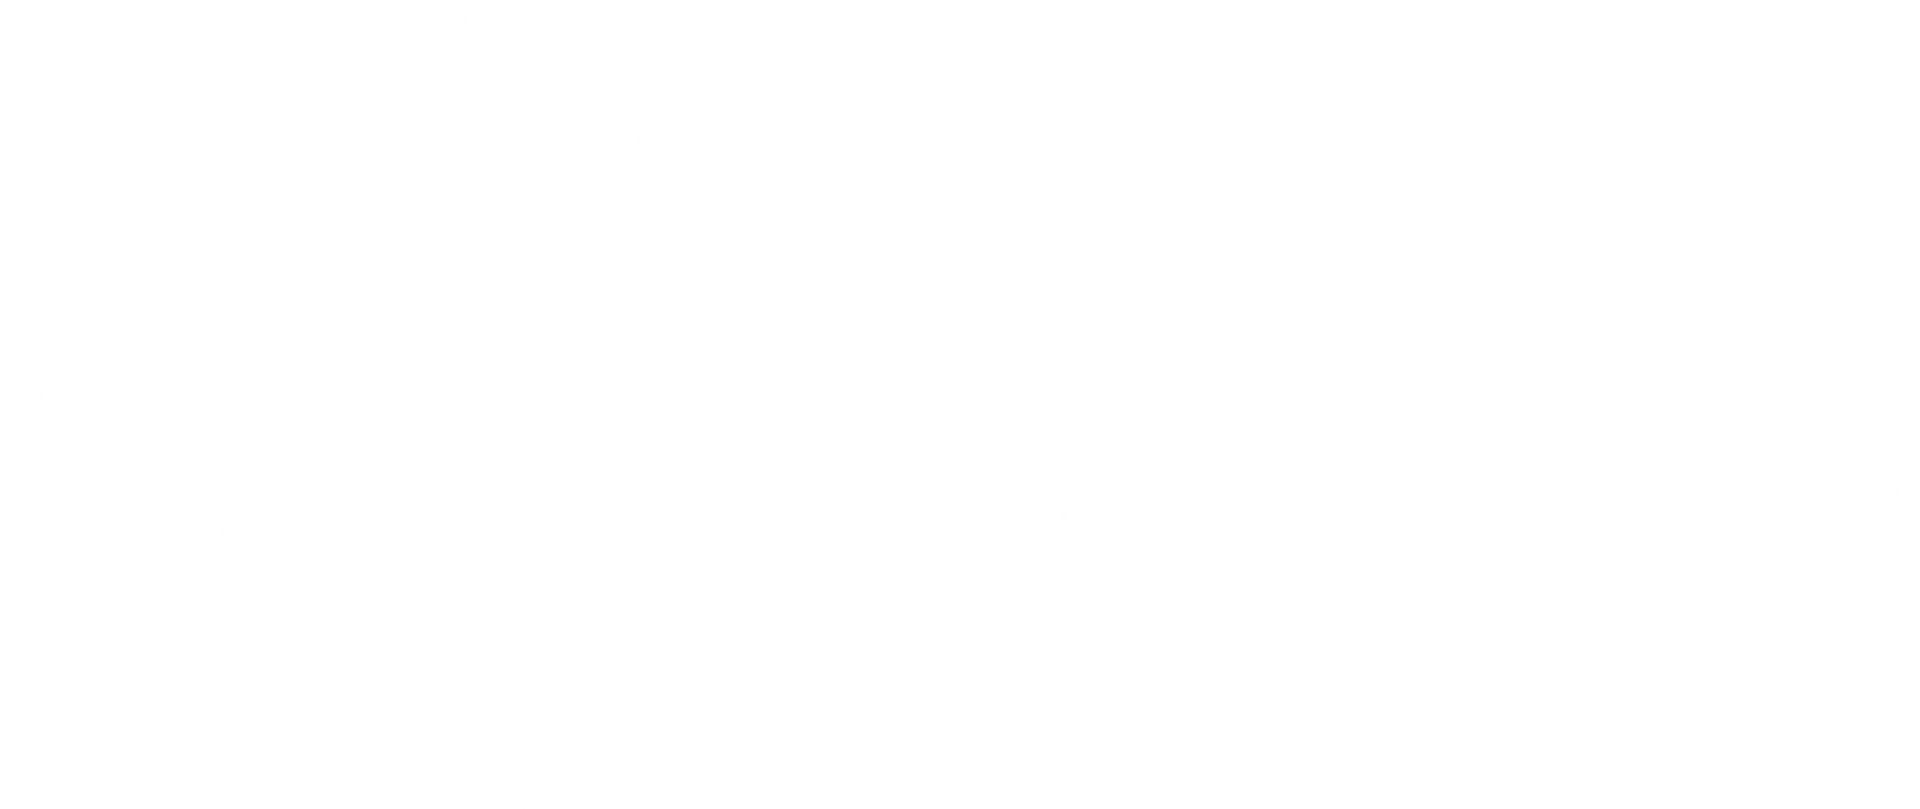 Société d'installation agréé Ajax systems